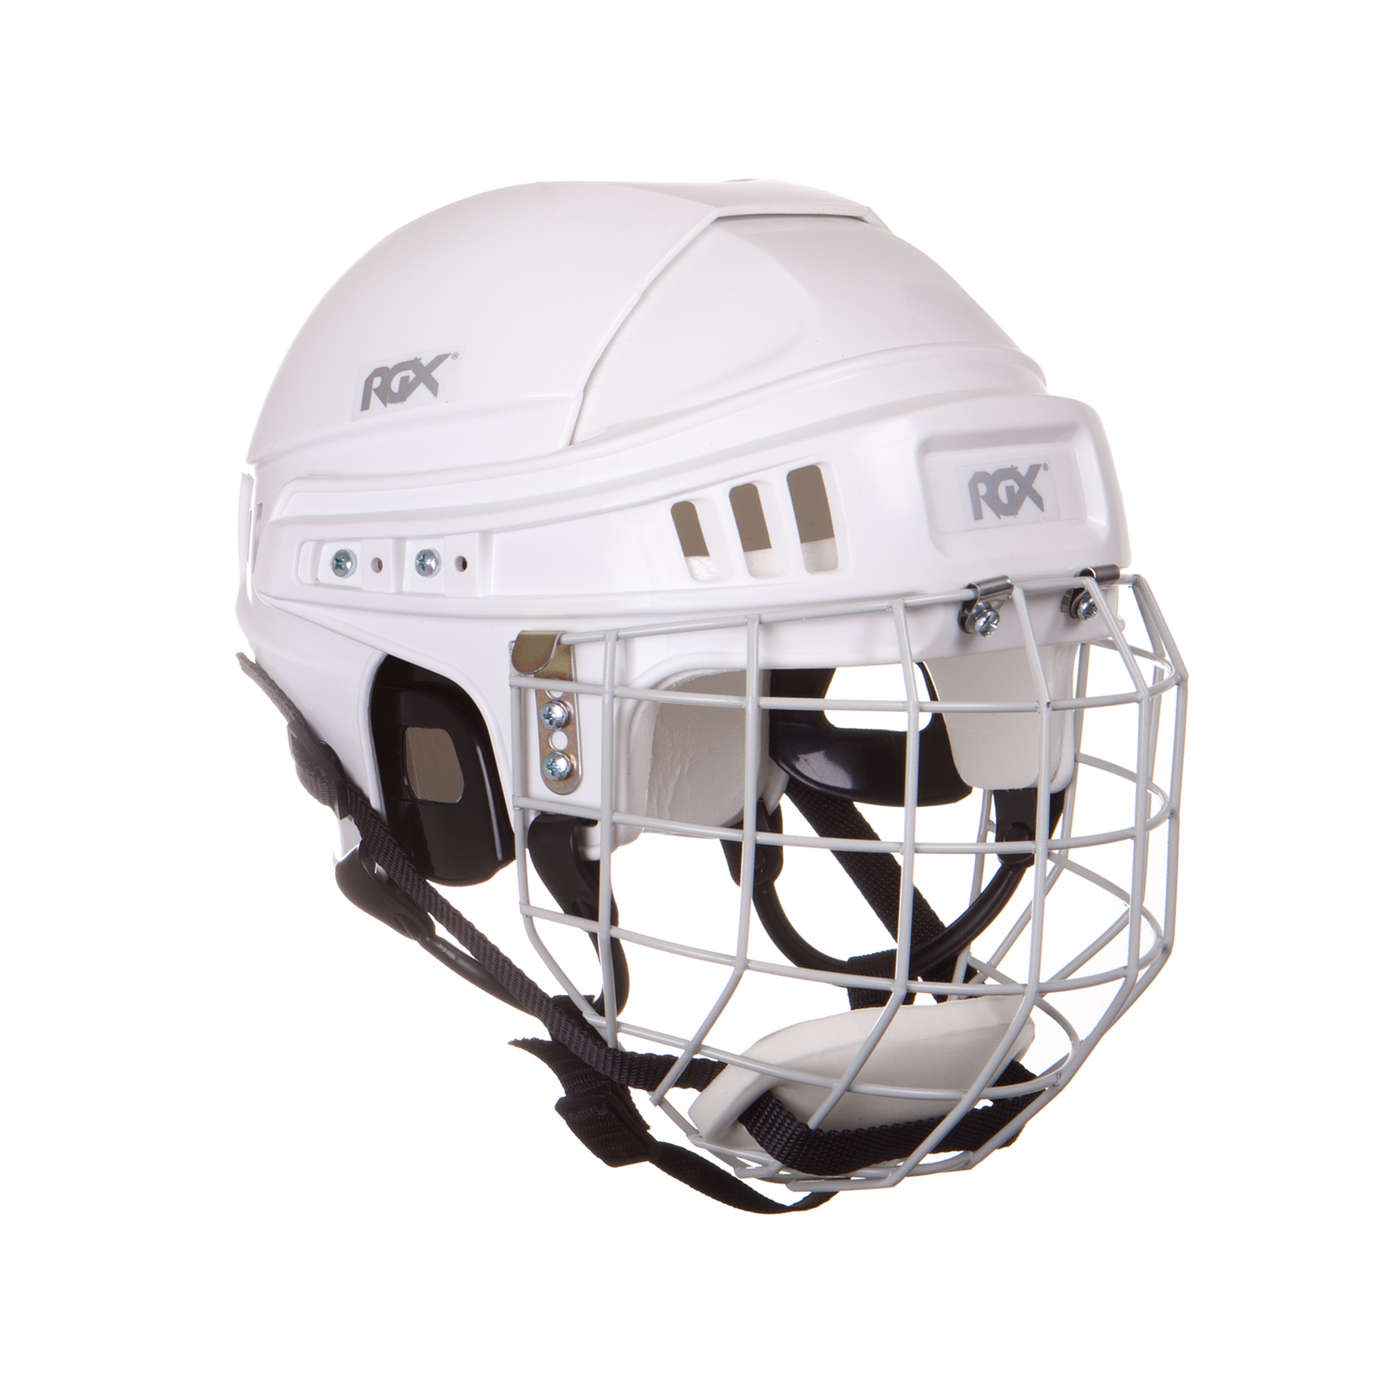 Шлем игрока хоккейный с маской RGX белый L (59-63)